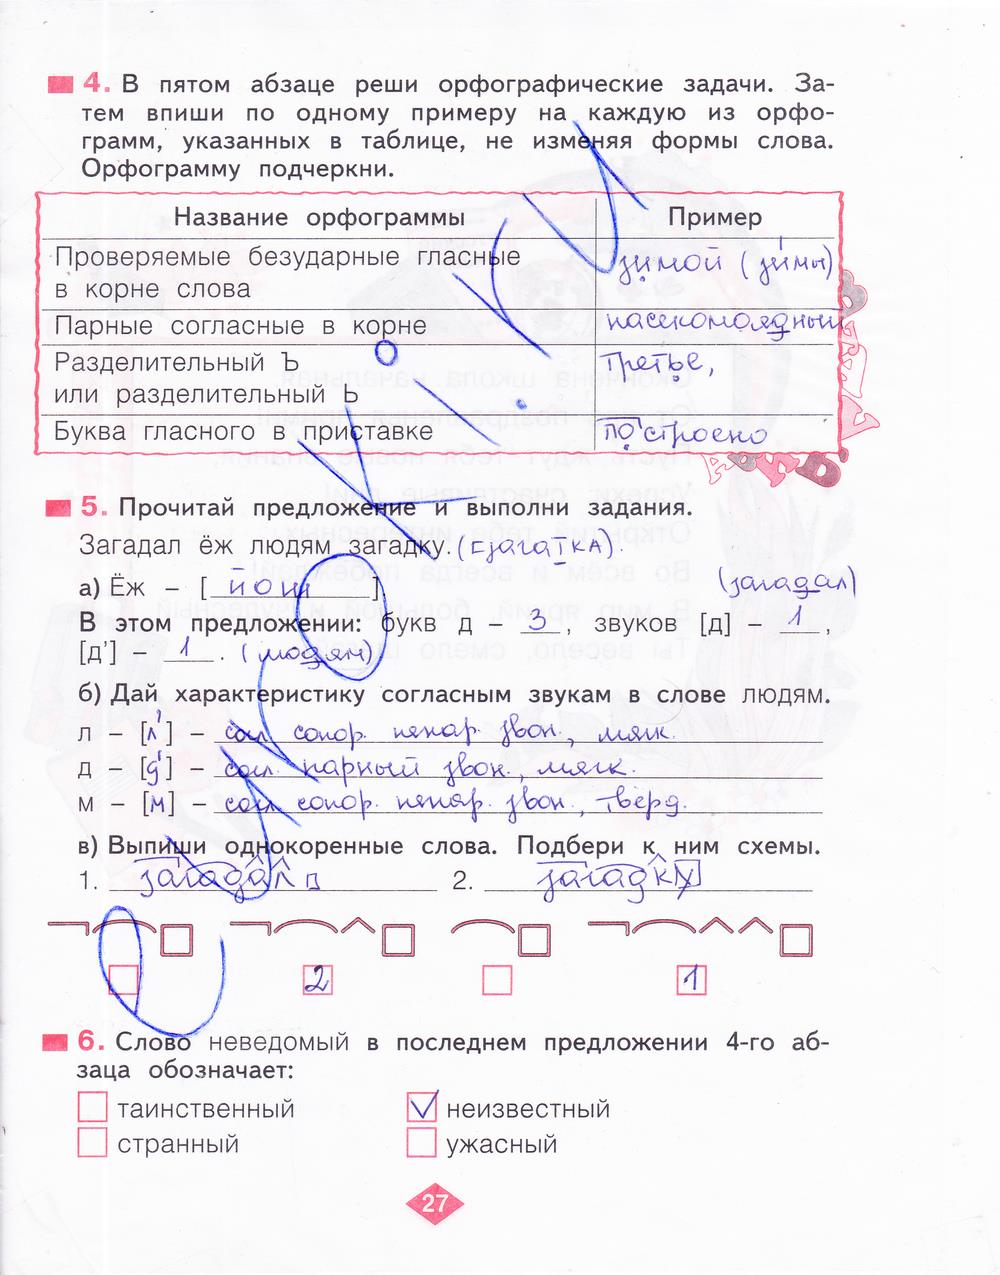 гдз 4 класс рабочая тетрадь часть 4 страница 27 русский язык Нечаева, Воскресенская